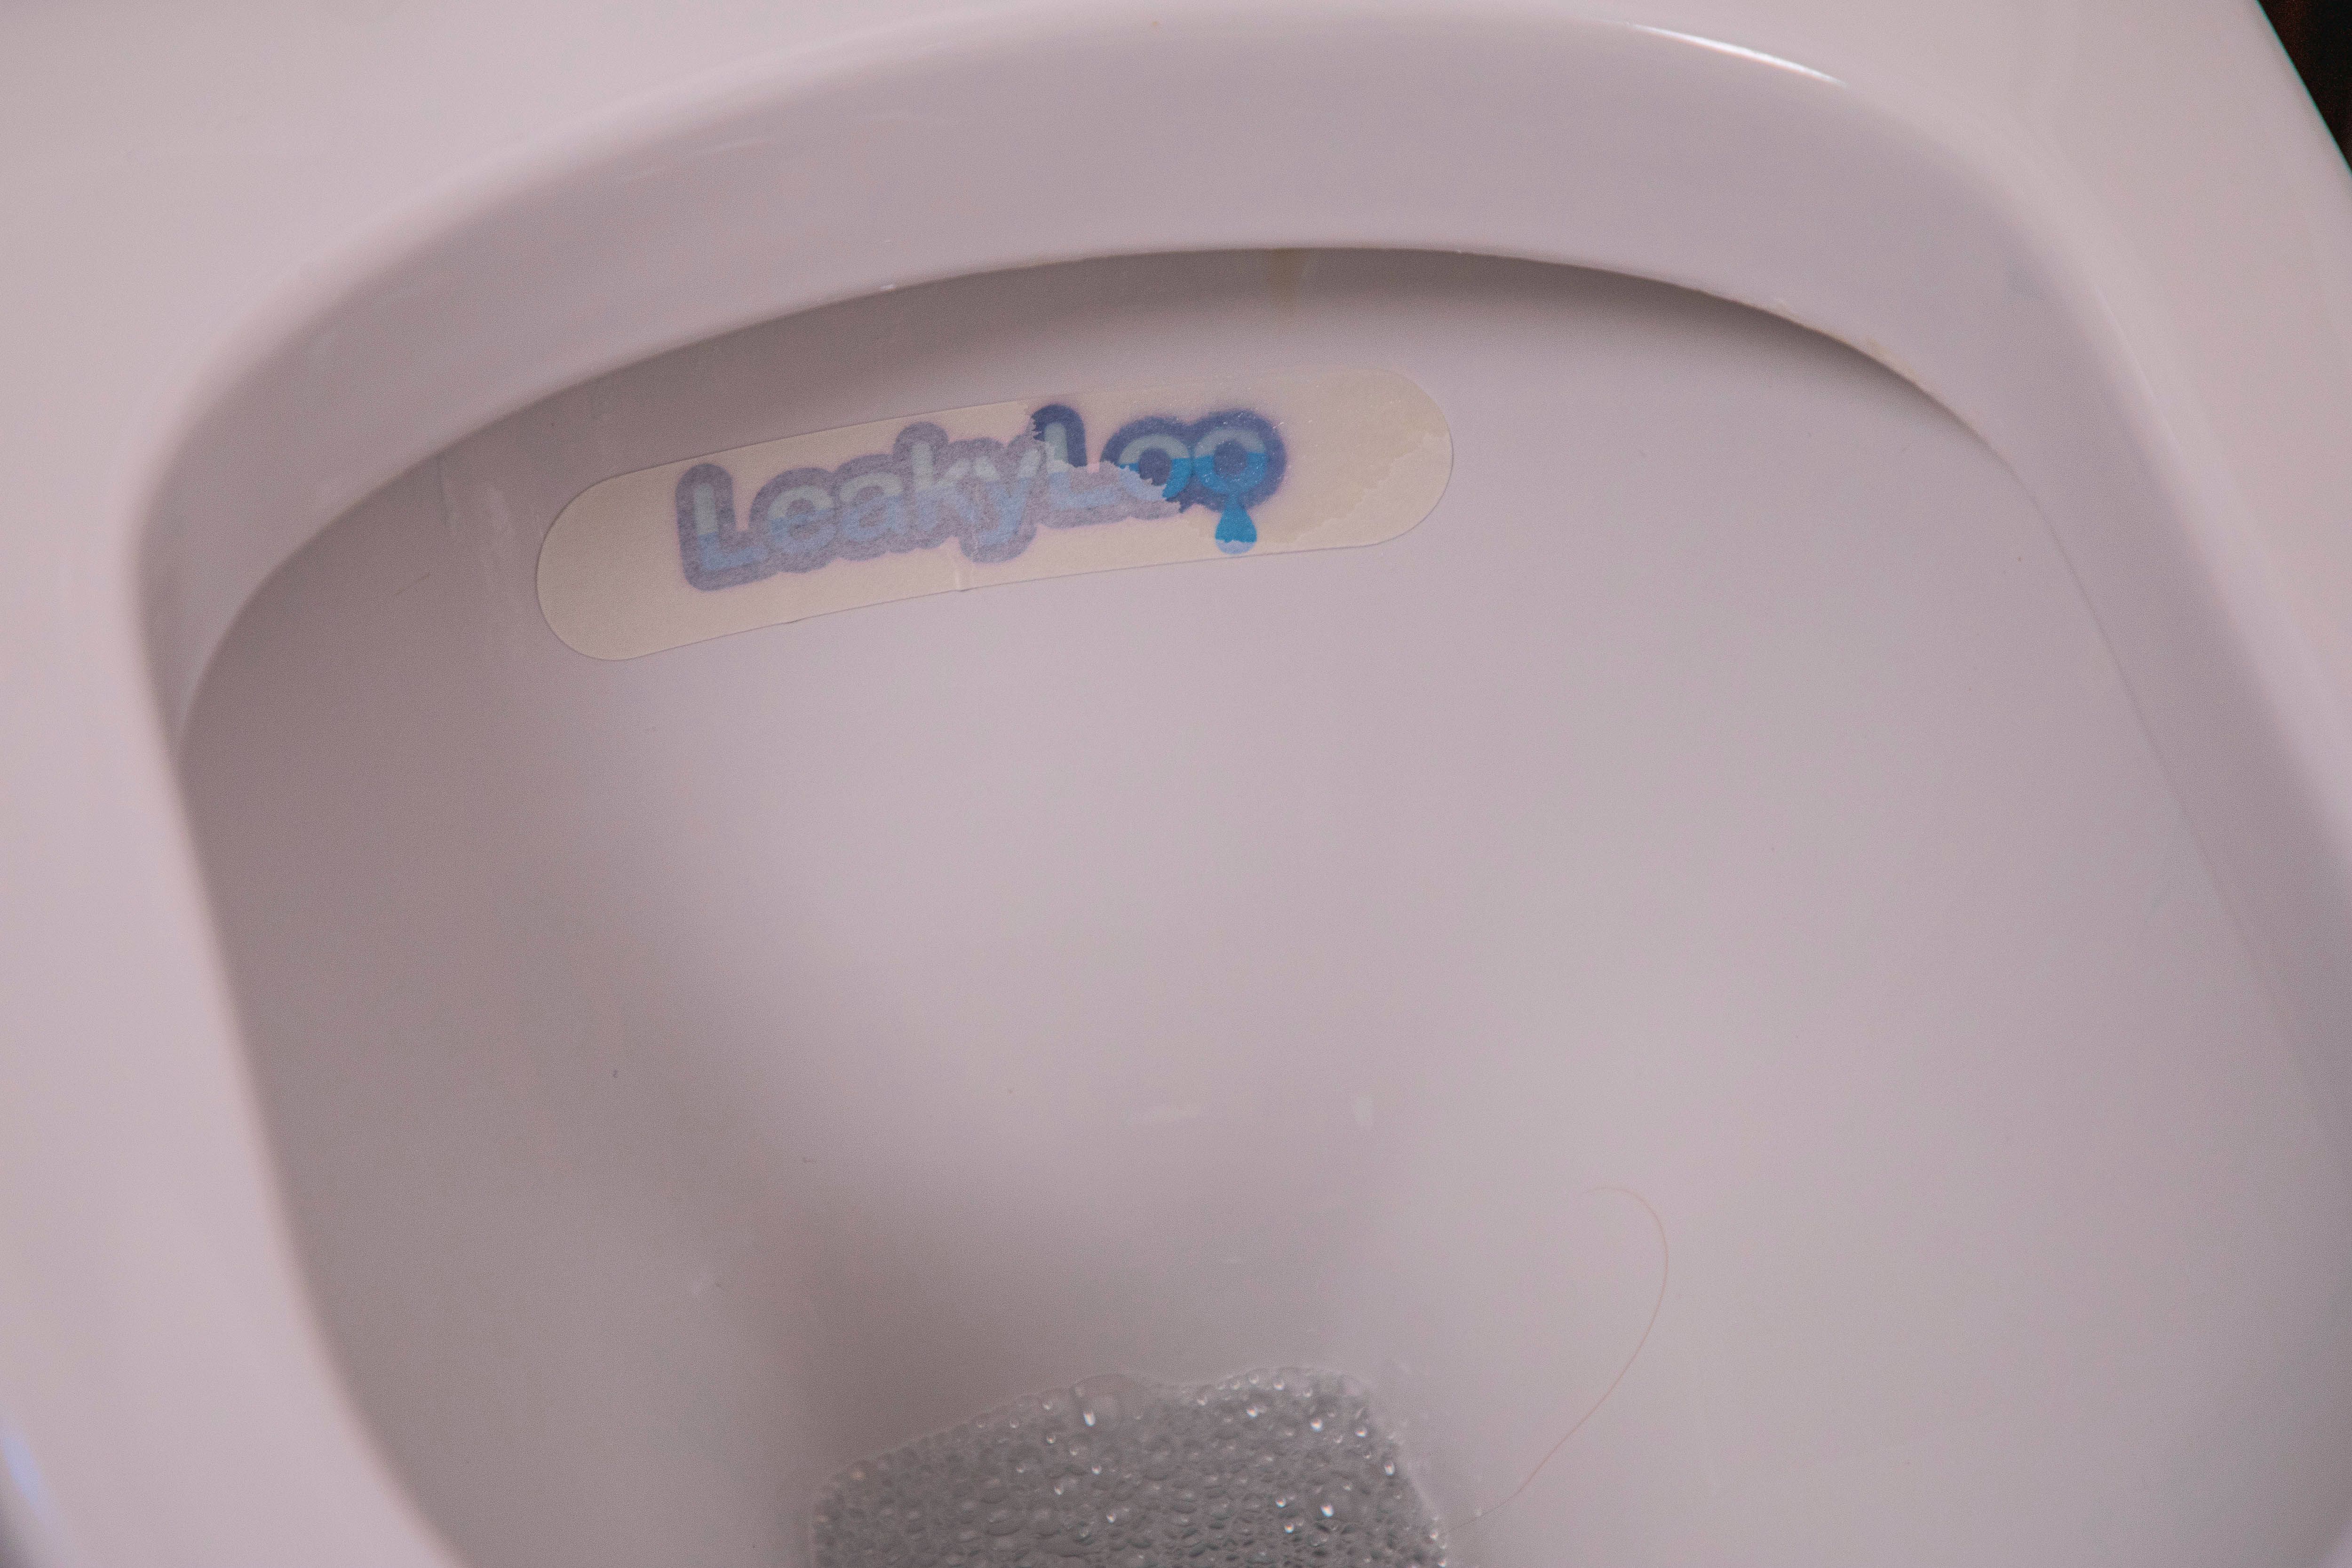 LeakyLoo strip in toilet pan